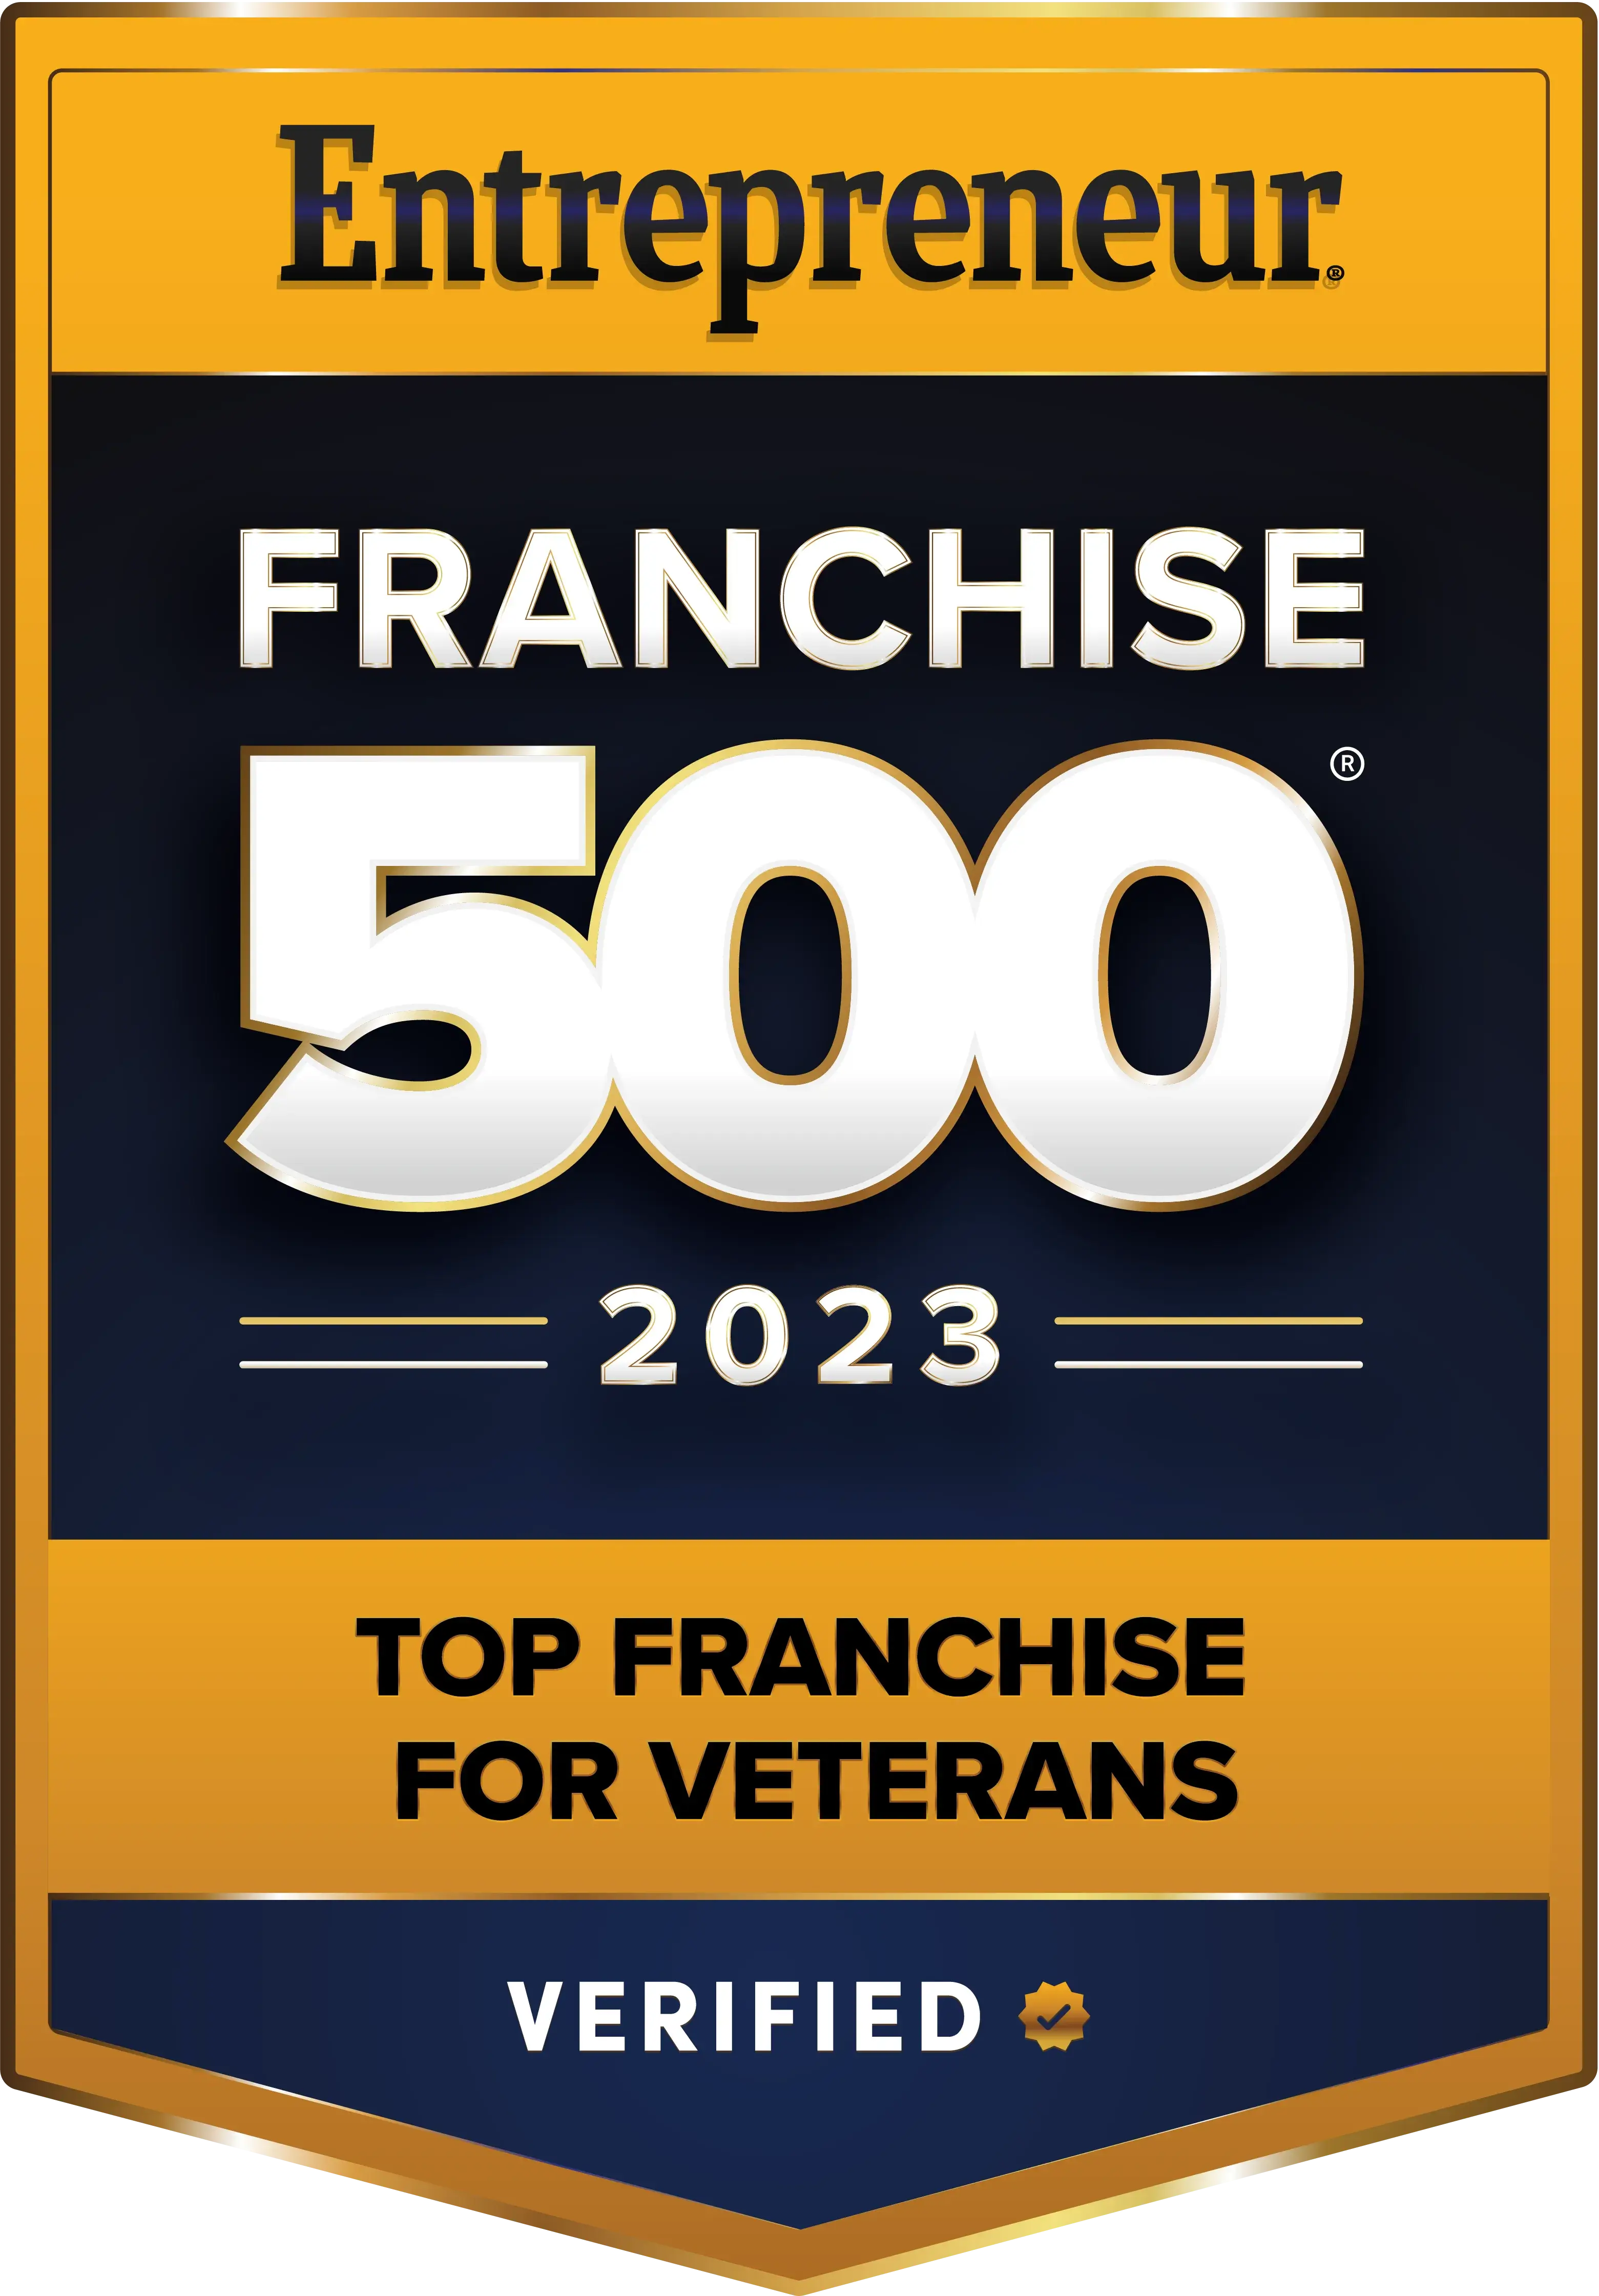 Franchise 500 Top Franchises for Veterans 